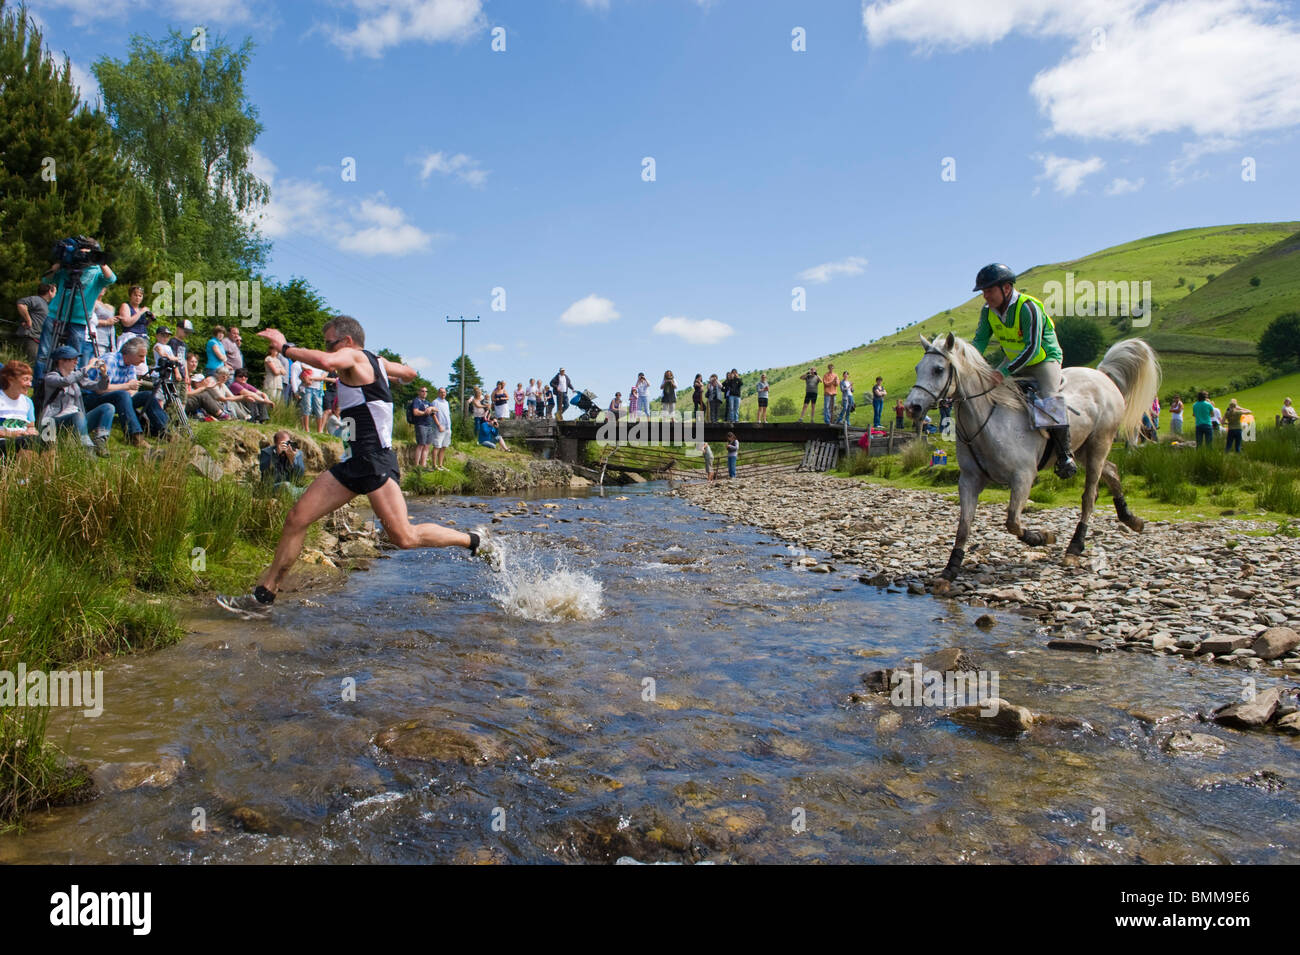 Porteur et les chevaux traversent la rivière Ford à Abergwesyn dans l'homme v course de chevaux à Llanwrtyd Wells Powys Pays de Galles UK Banque D'Images